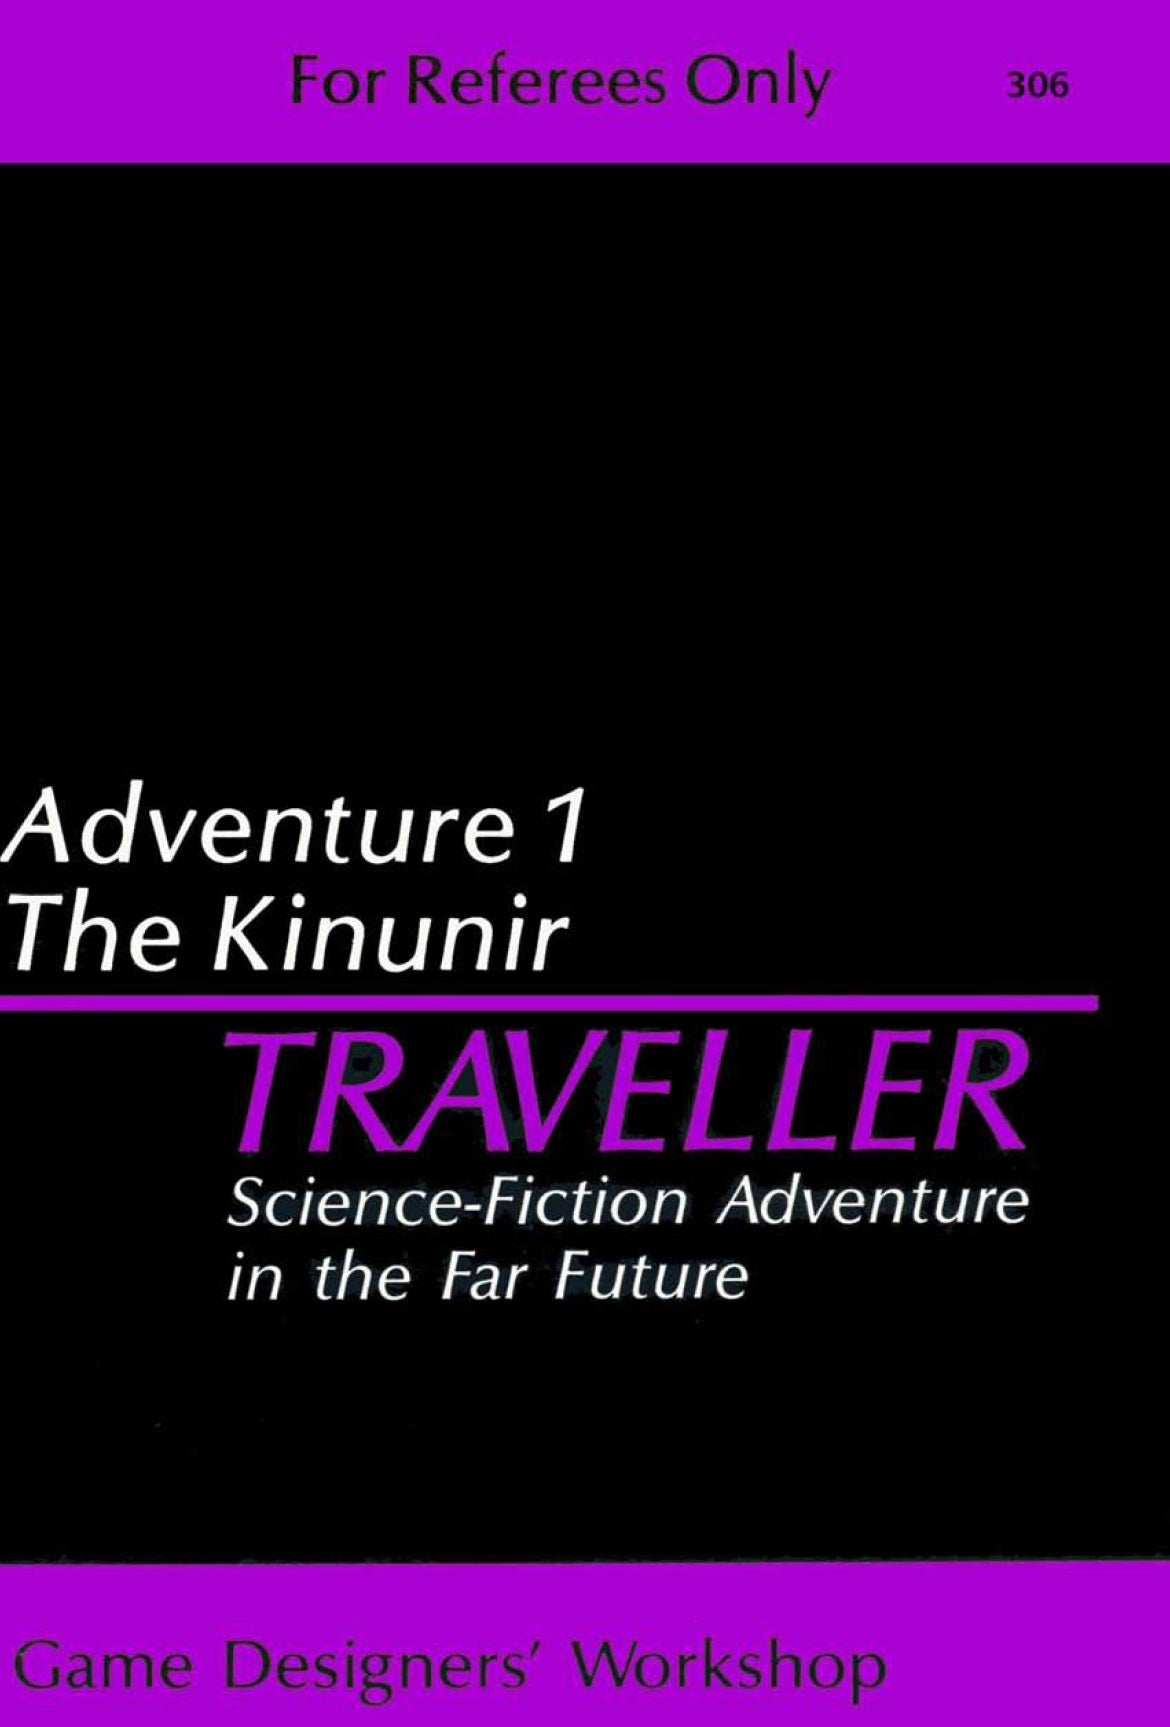 Adventure 1: The Kinunir ebook